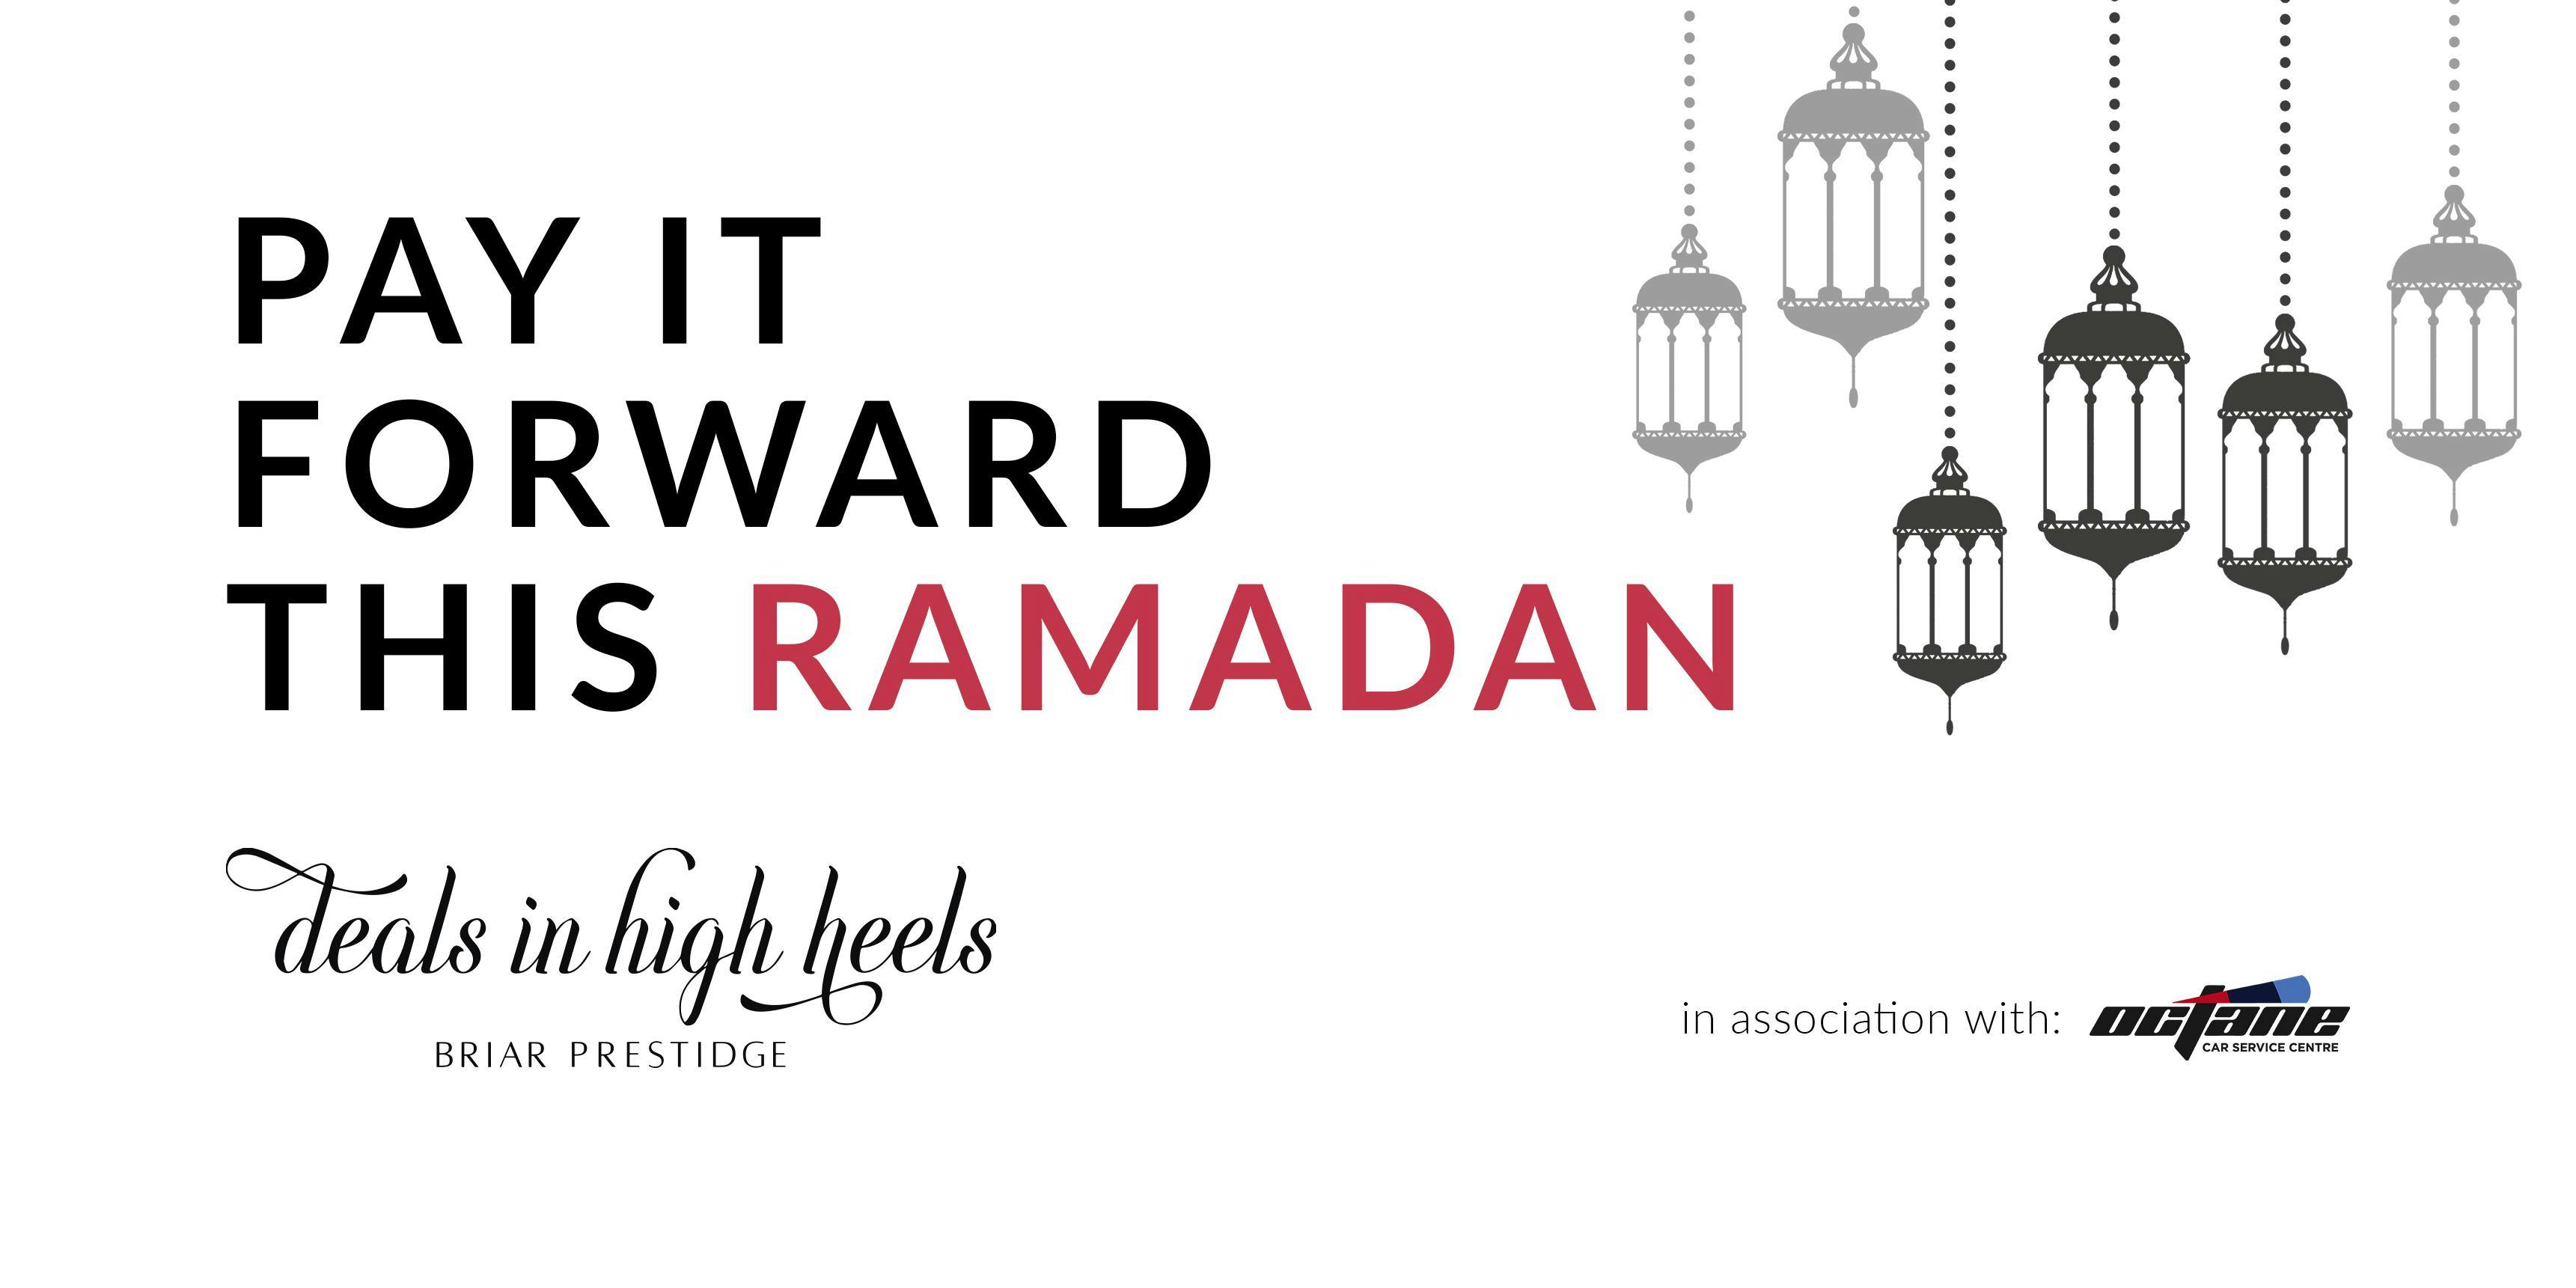 Pay It Forward This Ramadan